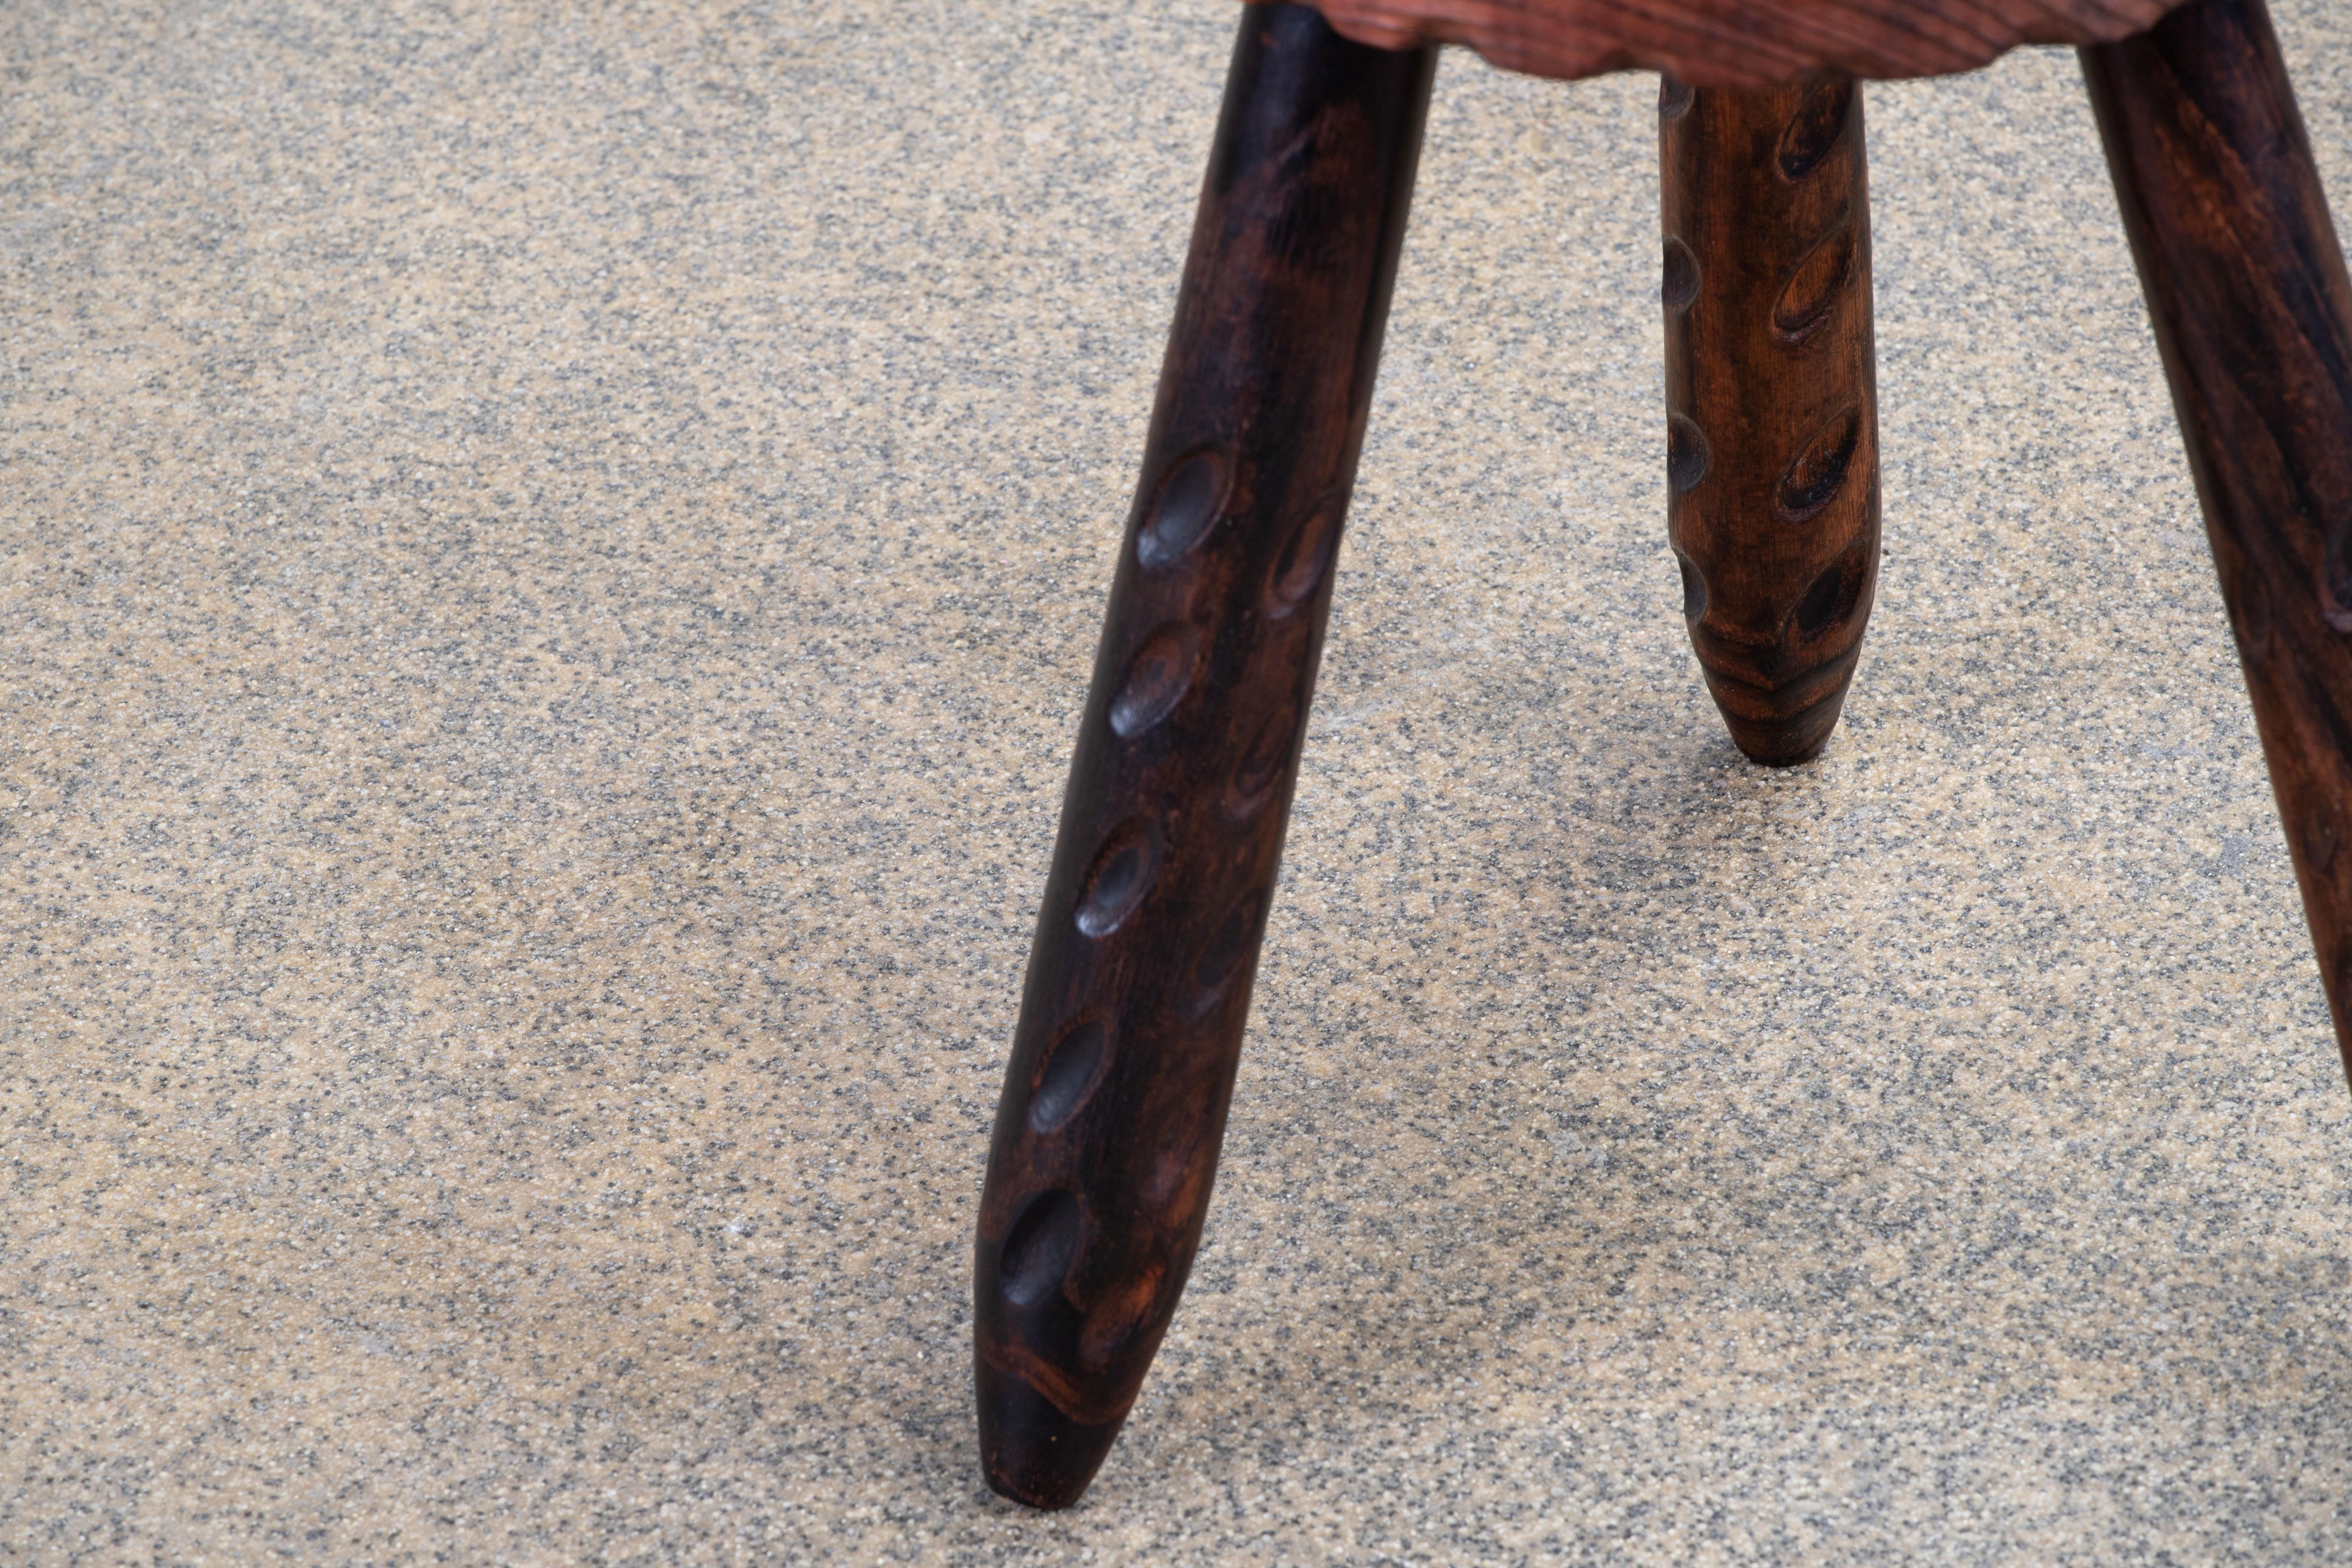 Fantastique tabouret en bois de France dans le style de Charlotte Perriand. Fabriqué dans les années 1960 avec trois pieds. Pas de matériel. Bon état vintage.
 